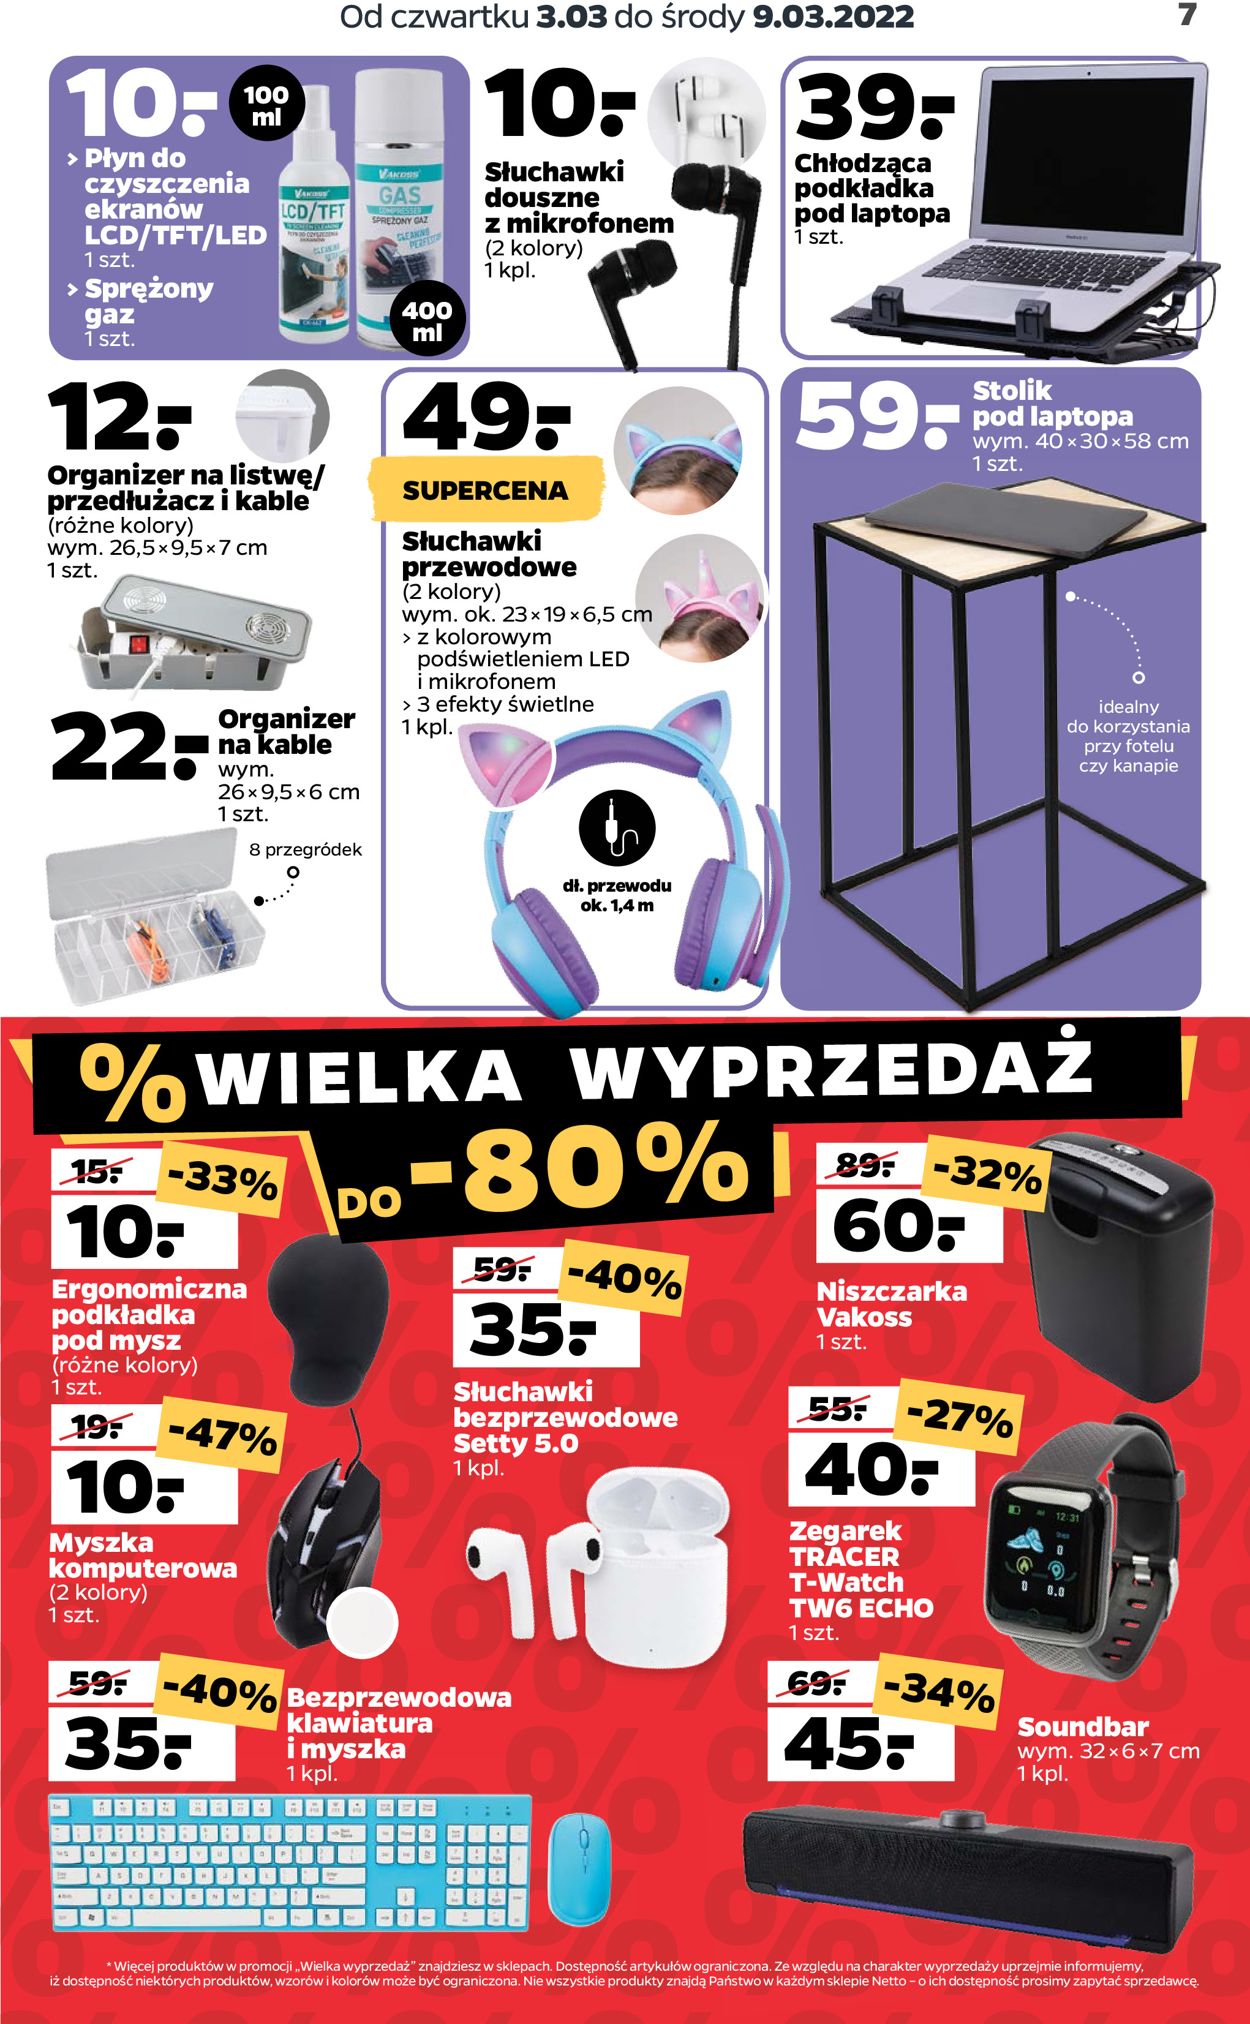 Gazetka promocyjna Netto - 03.03-09.03.2022 (Strona 7)